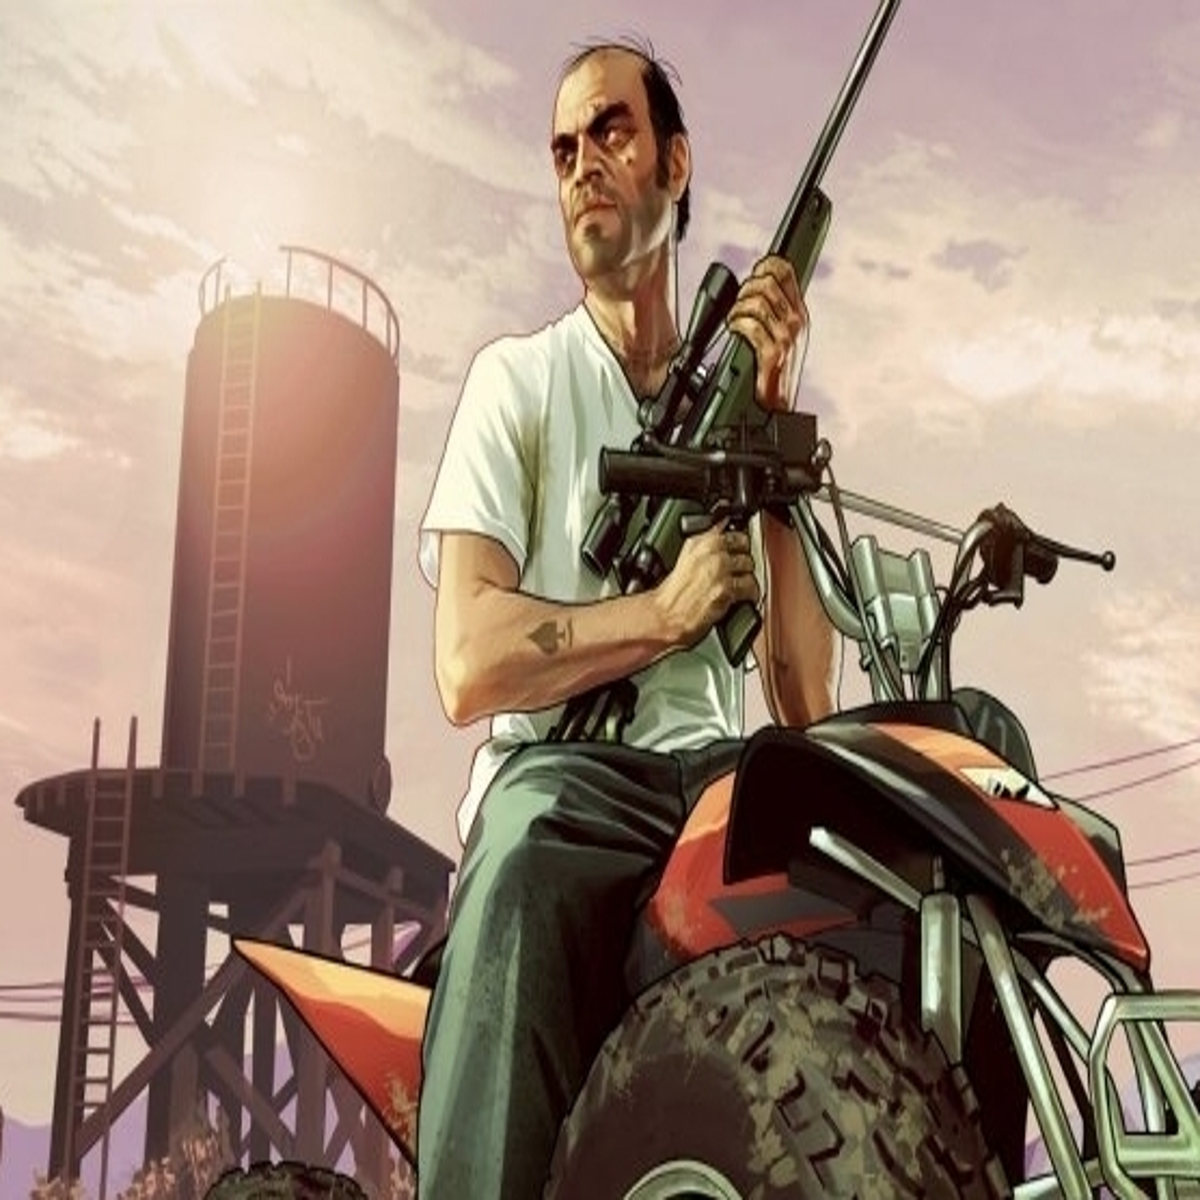 Grand Theft Auto 5 Occasion sur Xbox 360